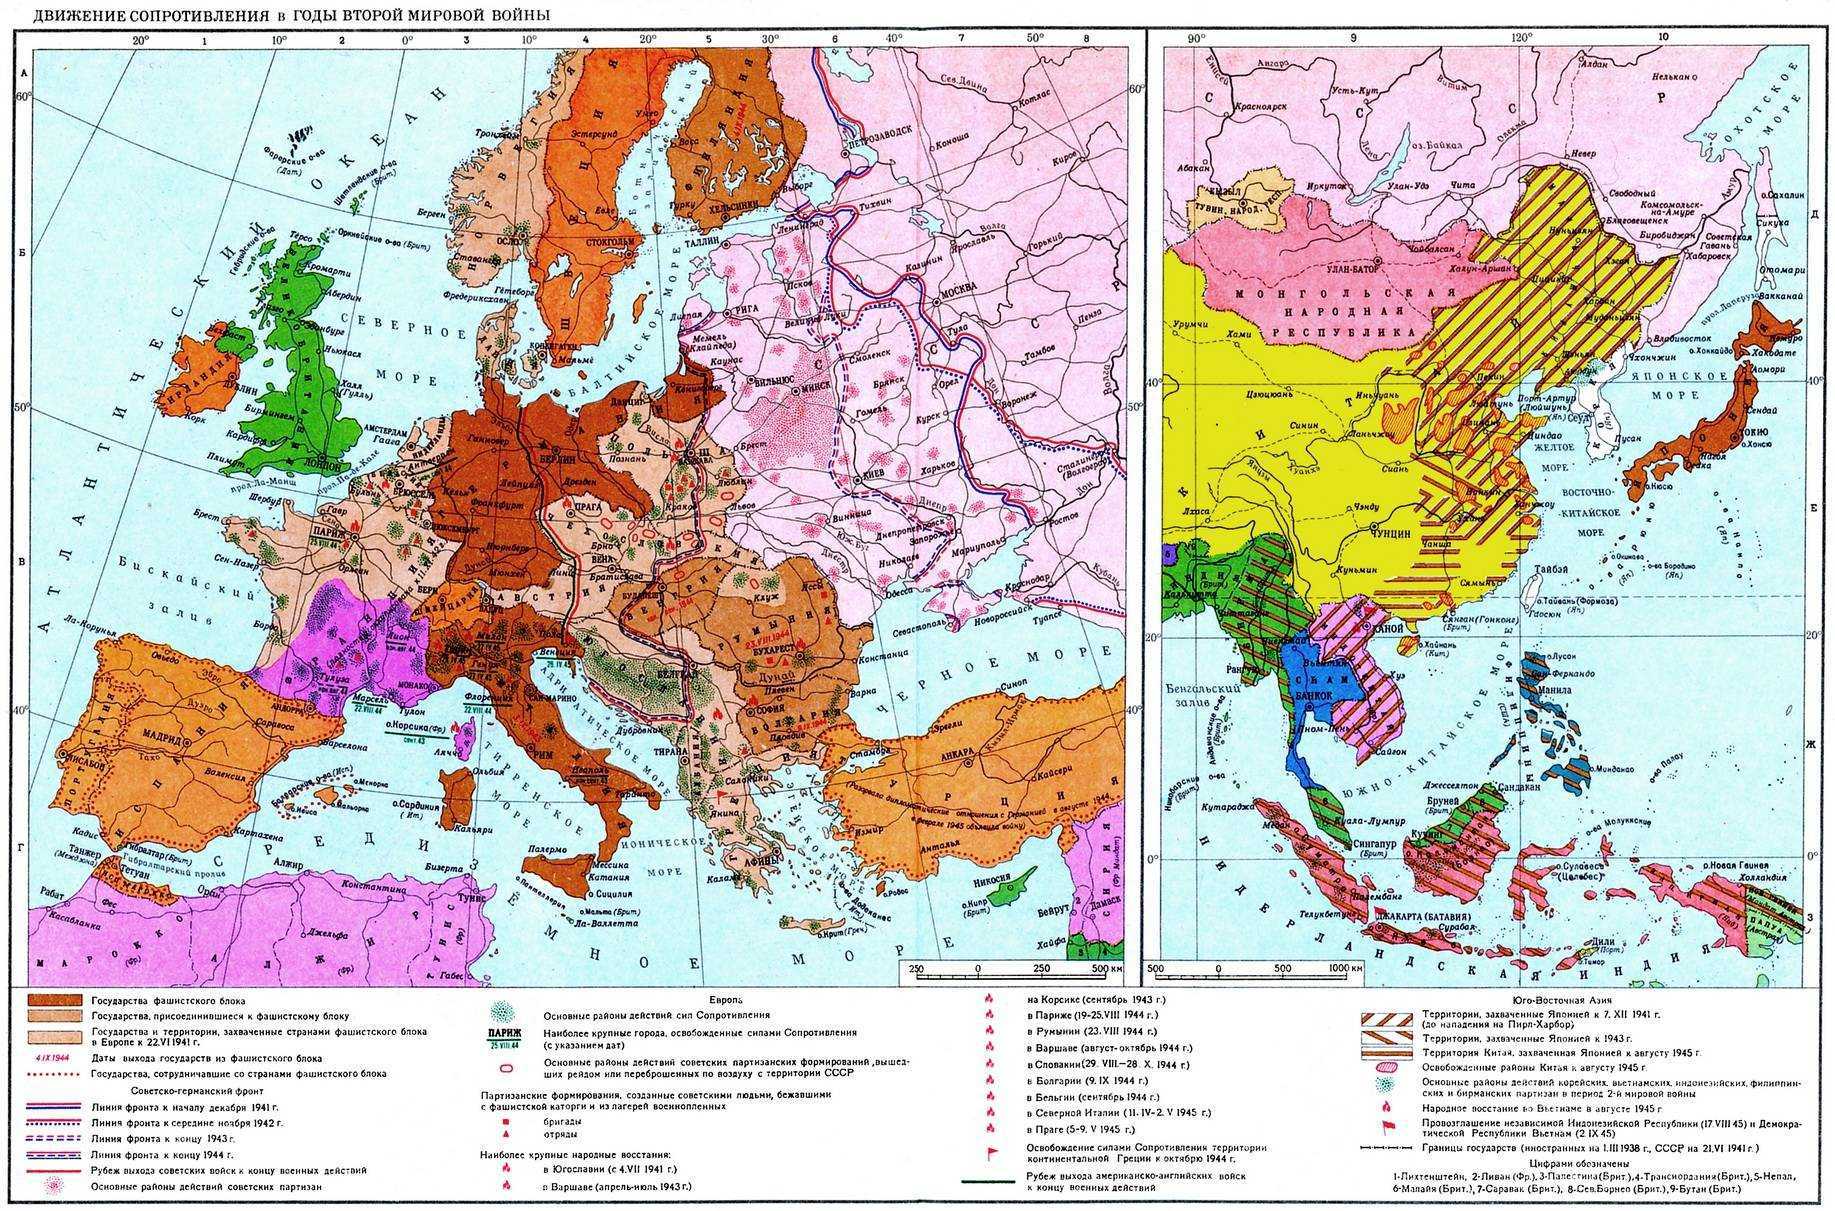 Движение сопротивление в странах европы. Карта стран во время второй мировой войны. Карта Европы во время 2 мировой войны. Карта Европы в годы второй мировой войны. Сопротивление в Европе в годы второй мировой войны.